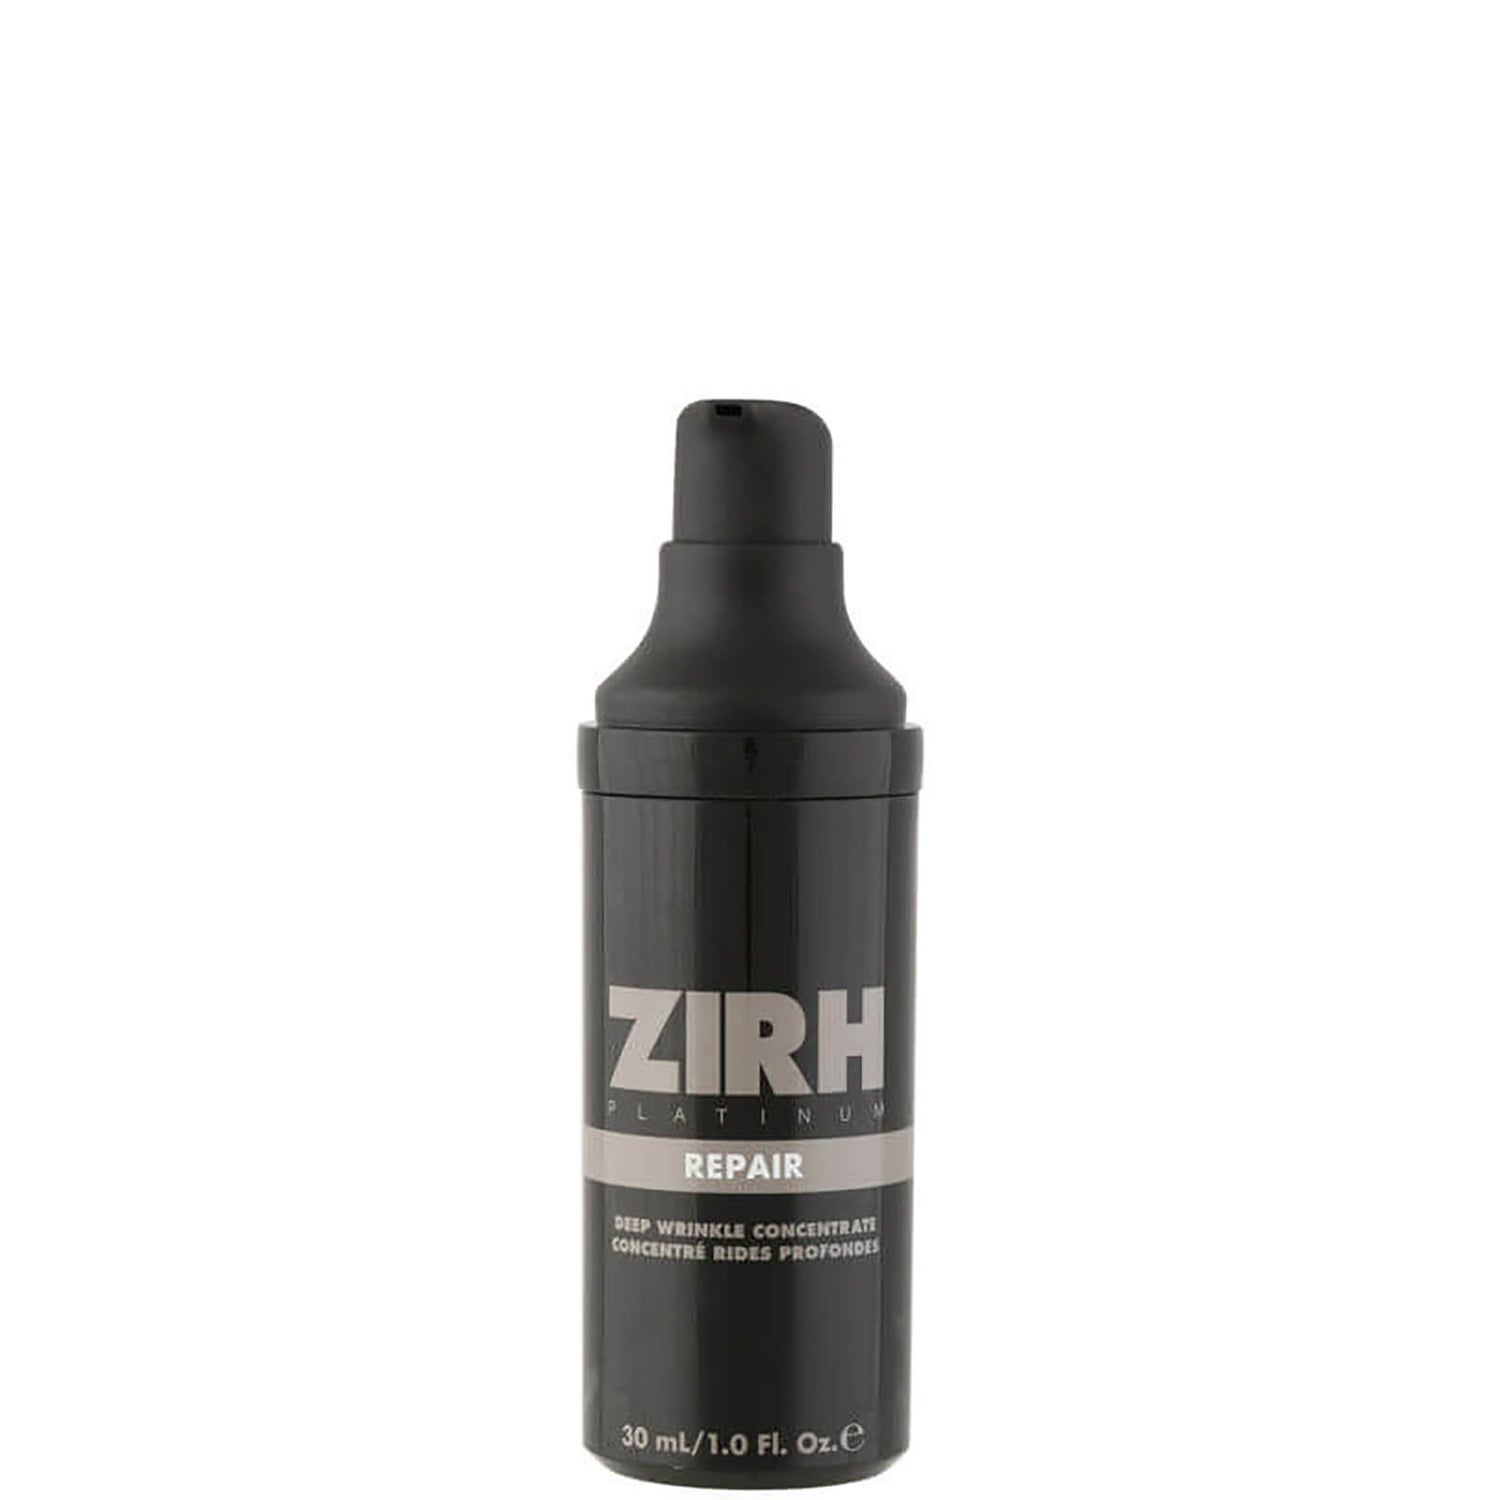 Zirh Repair Deep Wrinkle Concentrate 30 ml